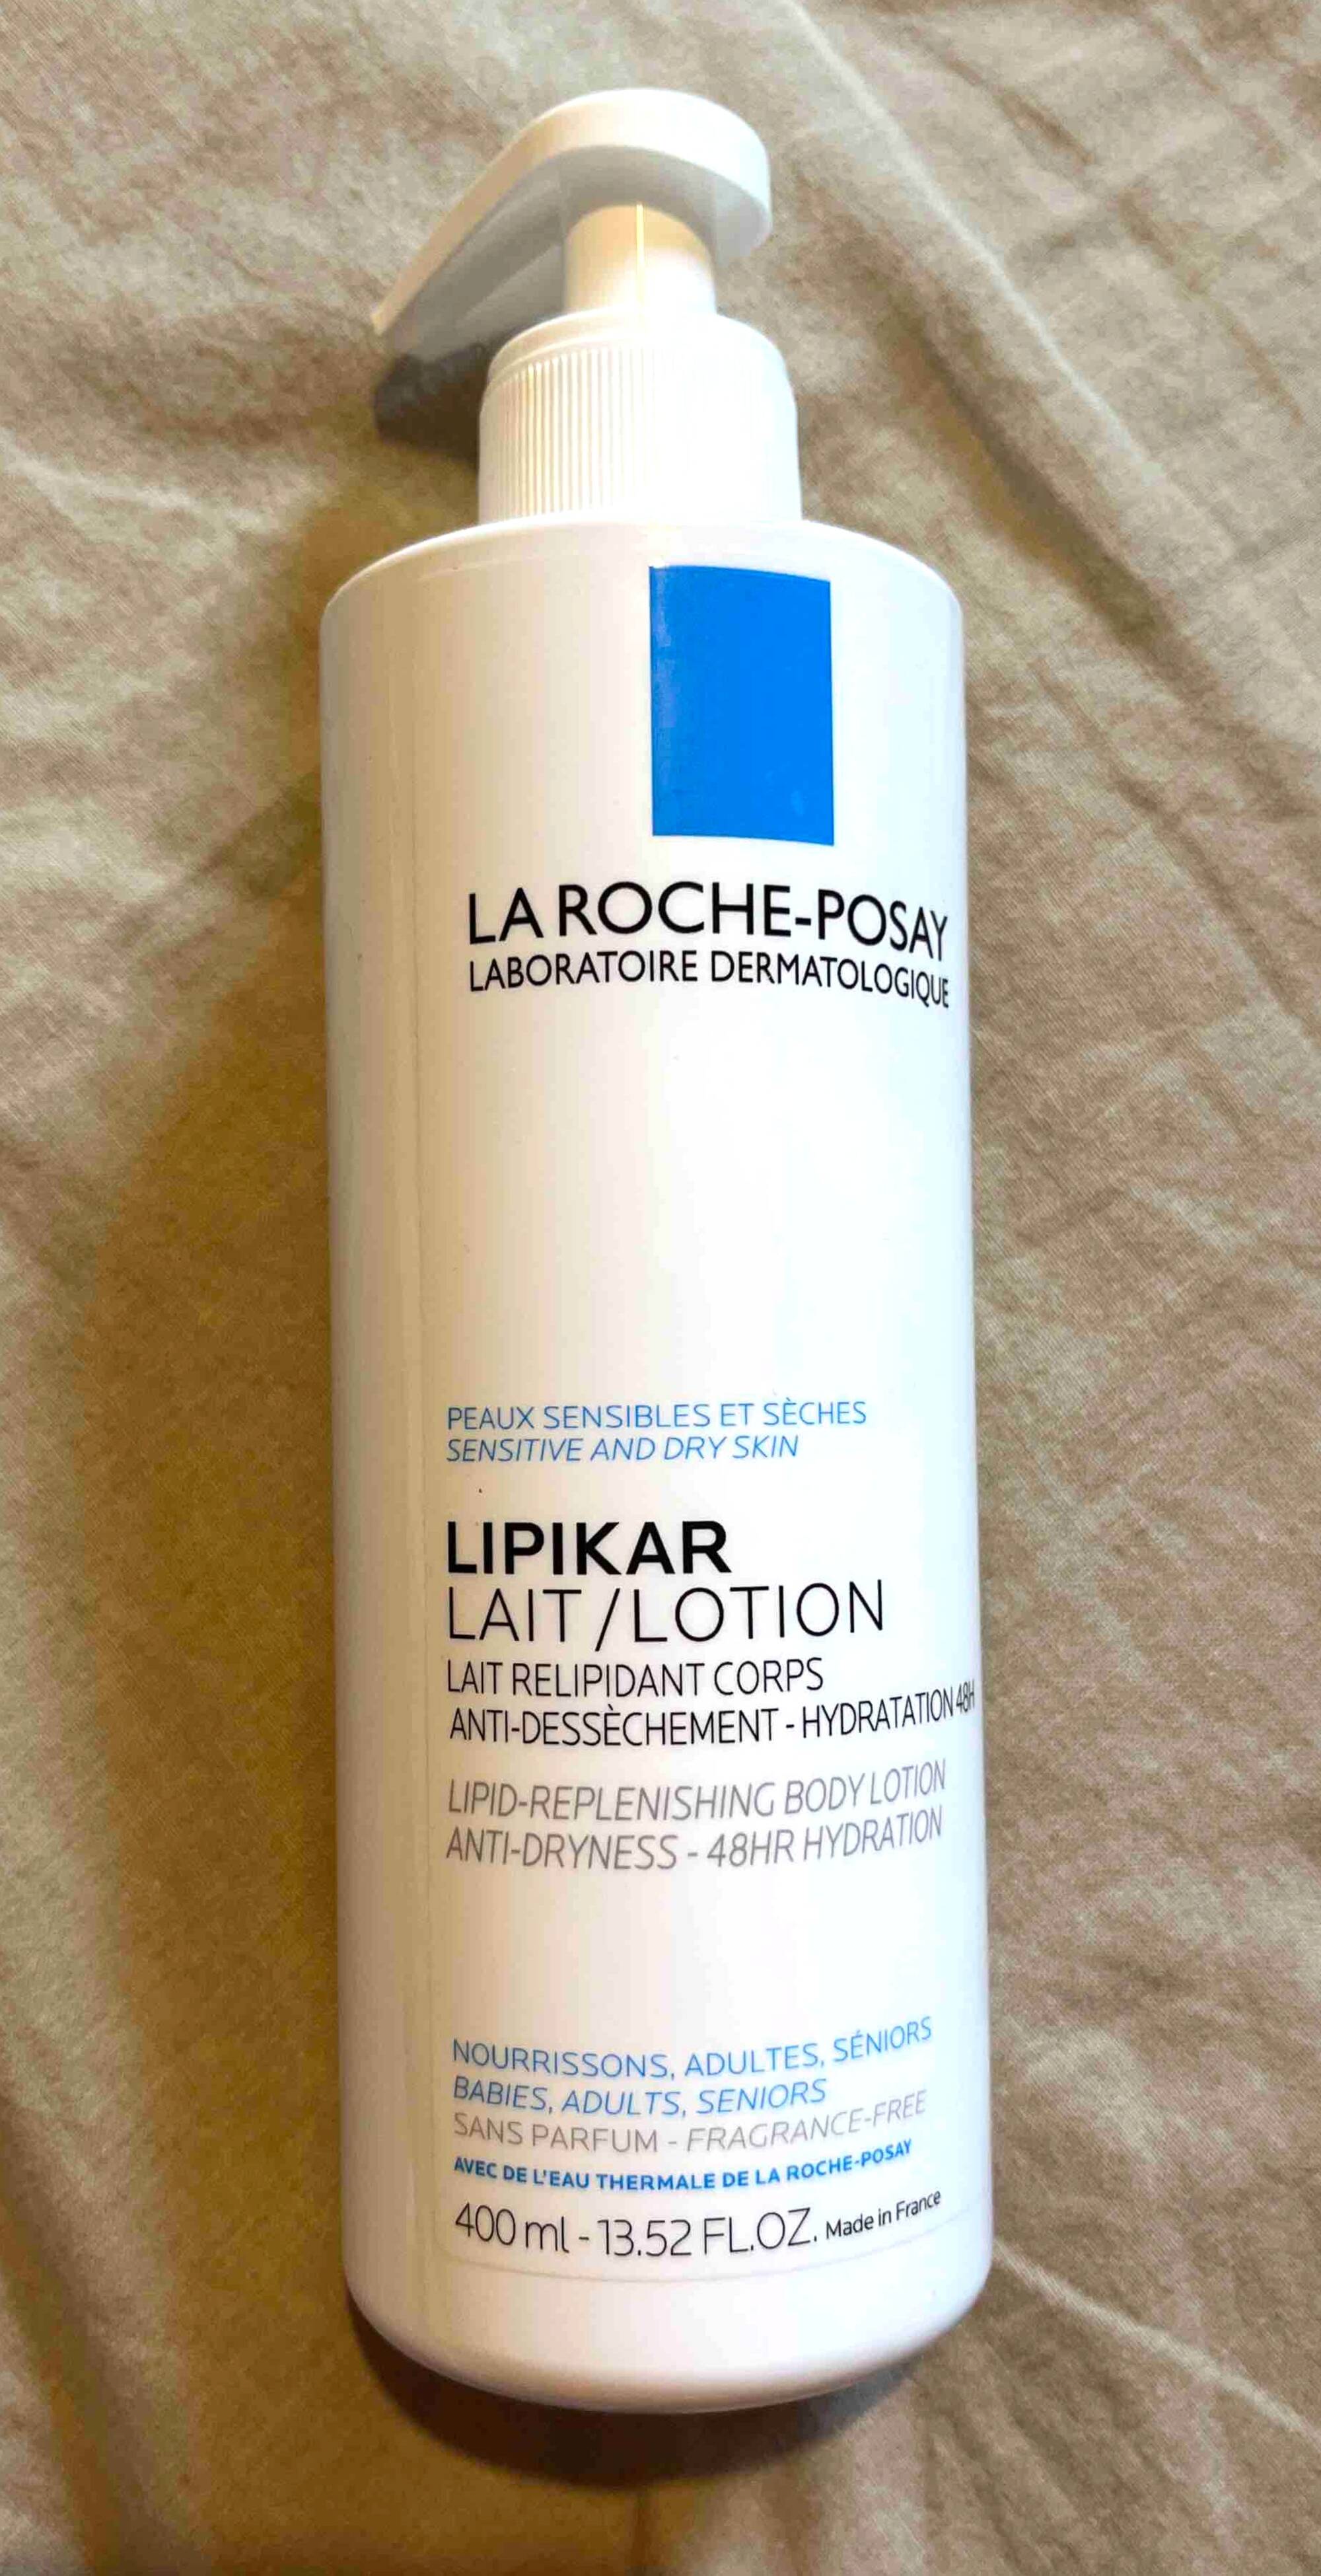 LA ROCHE-POSAY - Lipikar - Lait relipidant corps anti-dessèchement - Hydratation 48H